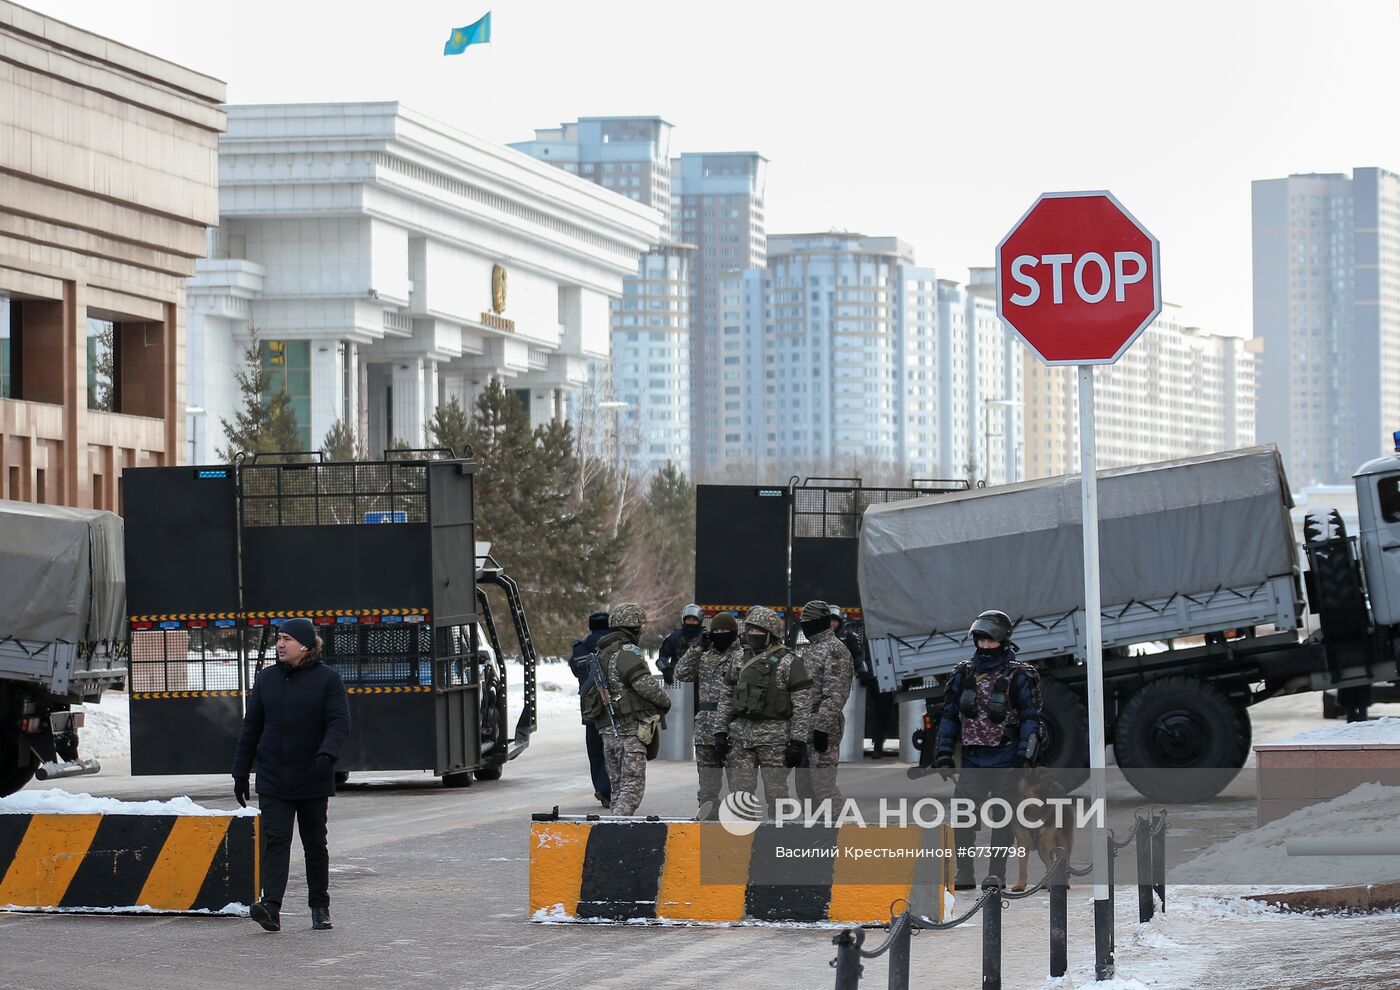 Ситуация в городах Казахстана во время ЧП